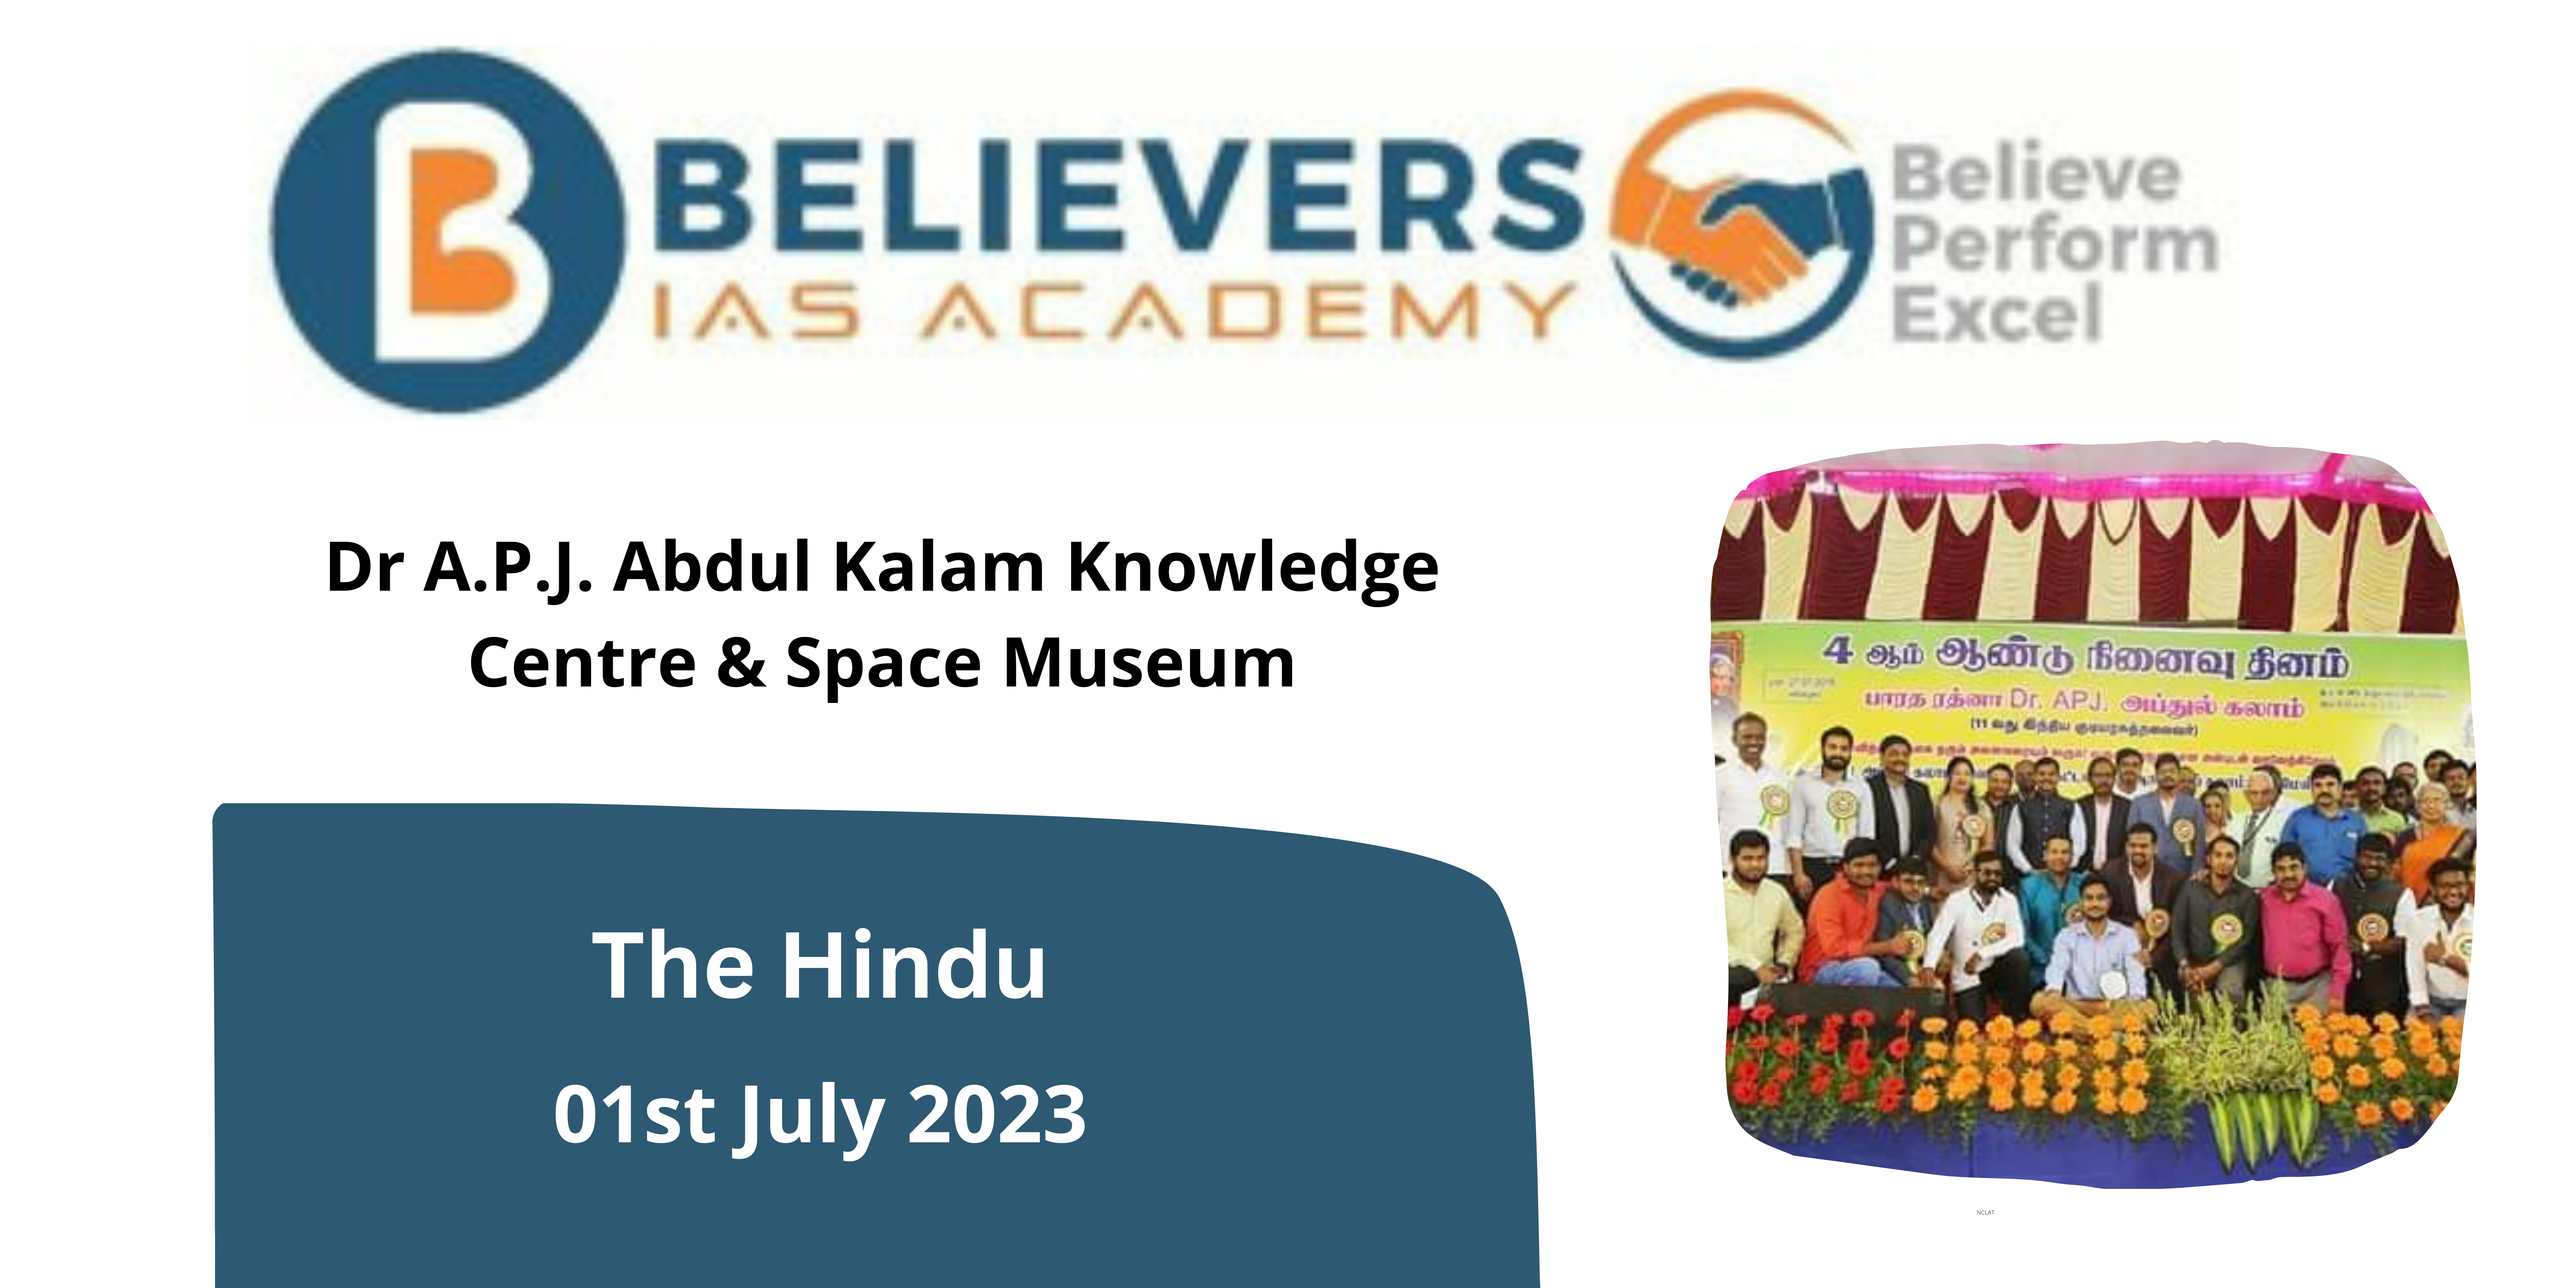 Dr A.P.J. Abdul Kalam Knowledge Centre & Space Museum